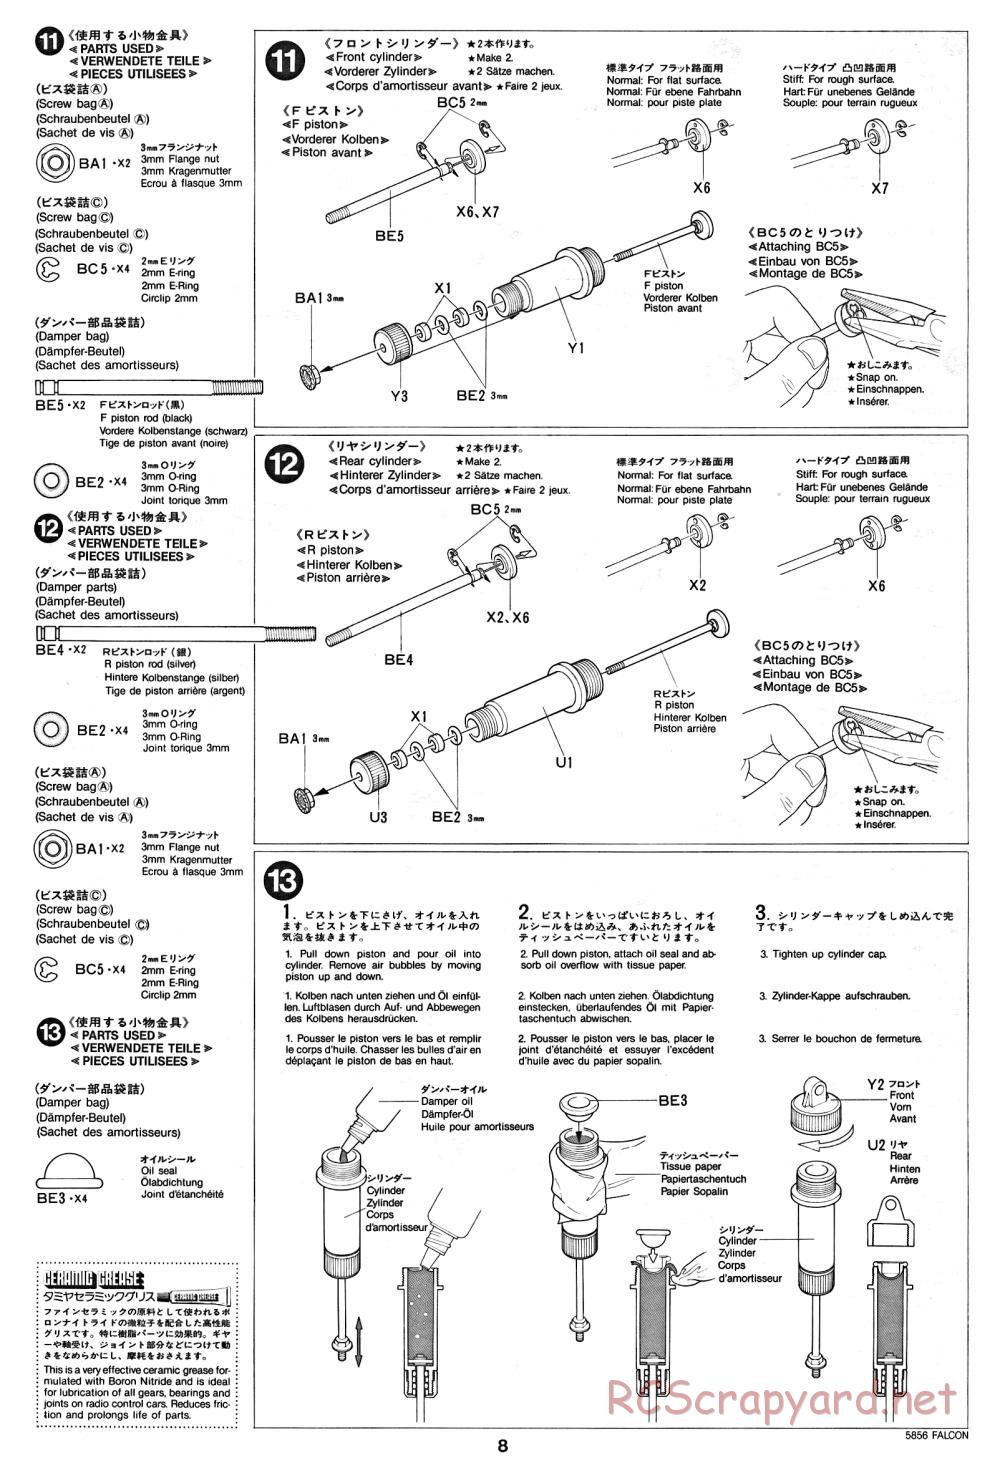 Tamiya - The Falcon - 58056 - Manual - Page 8